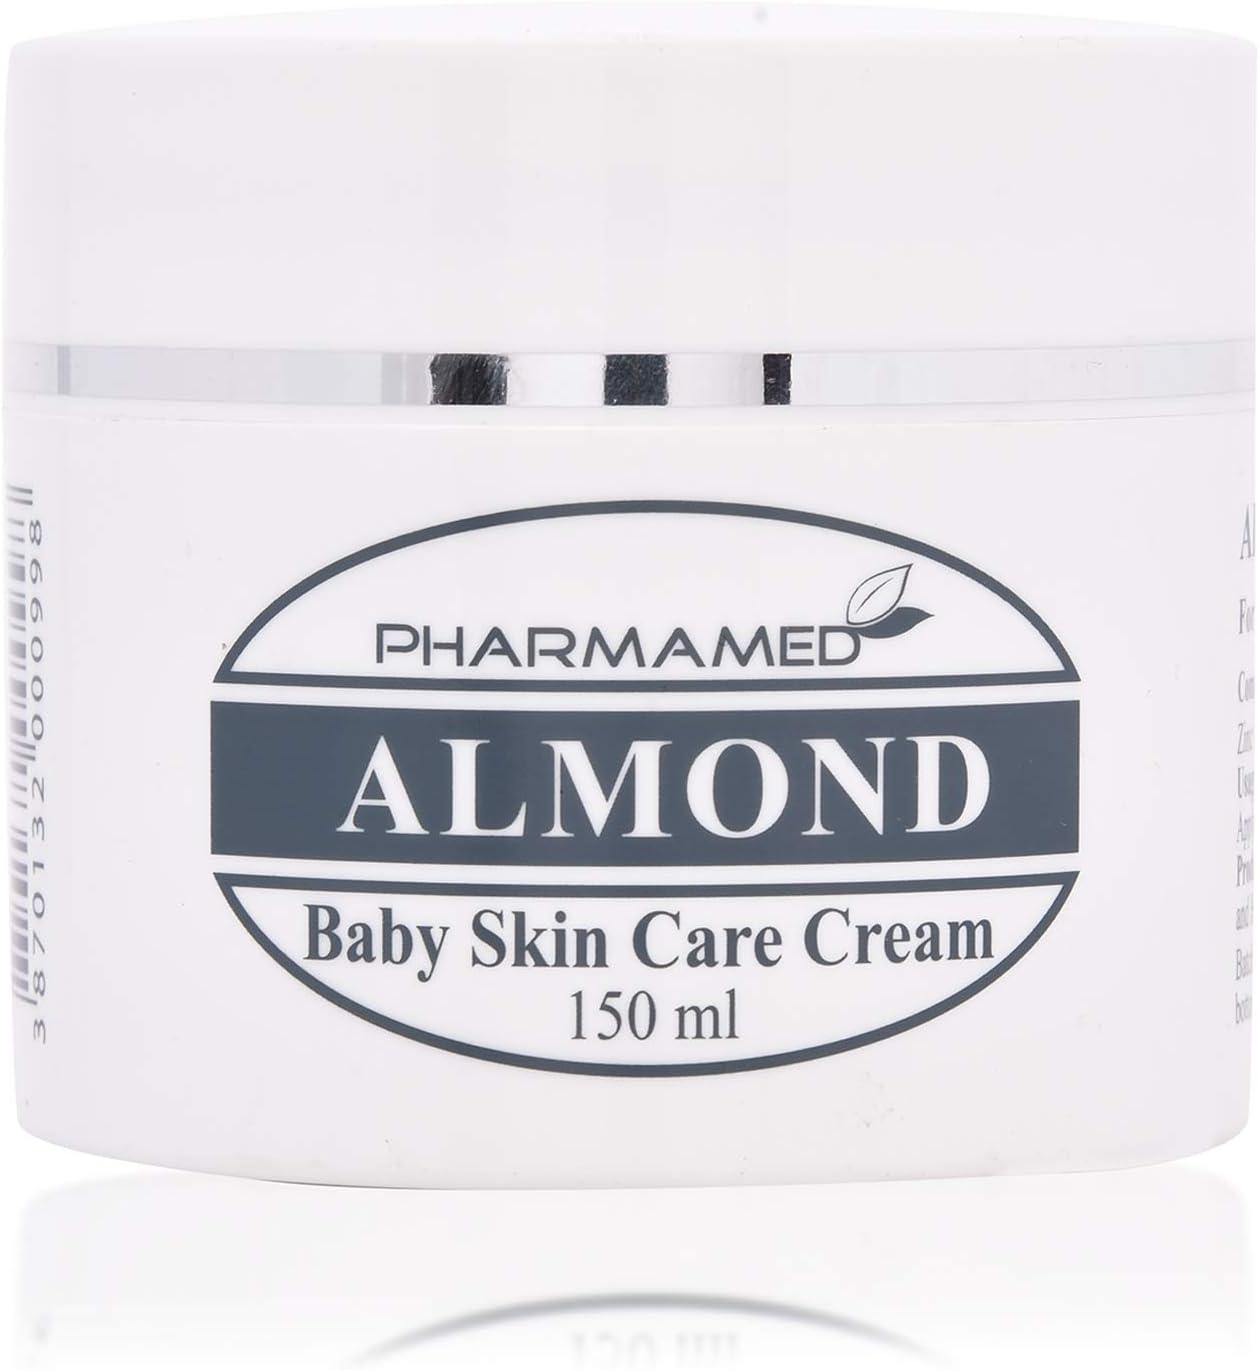 Pharmamed Almond Baby Skin Care Cream - 150 ml - Wellness Shoppee